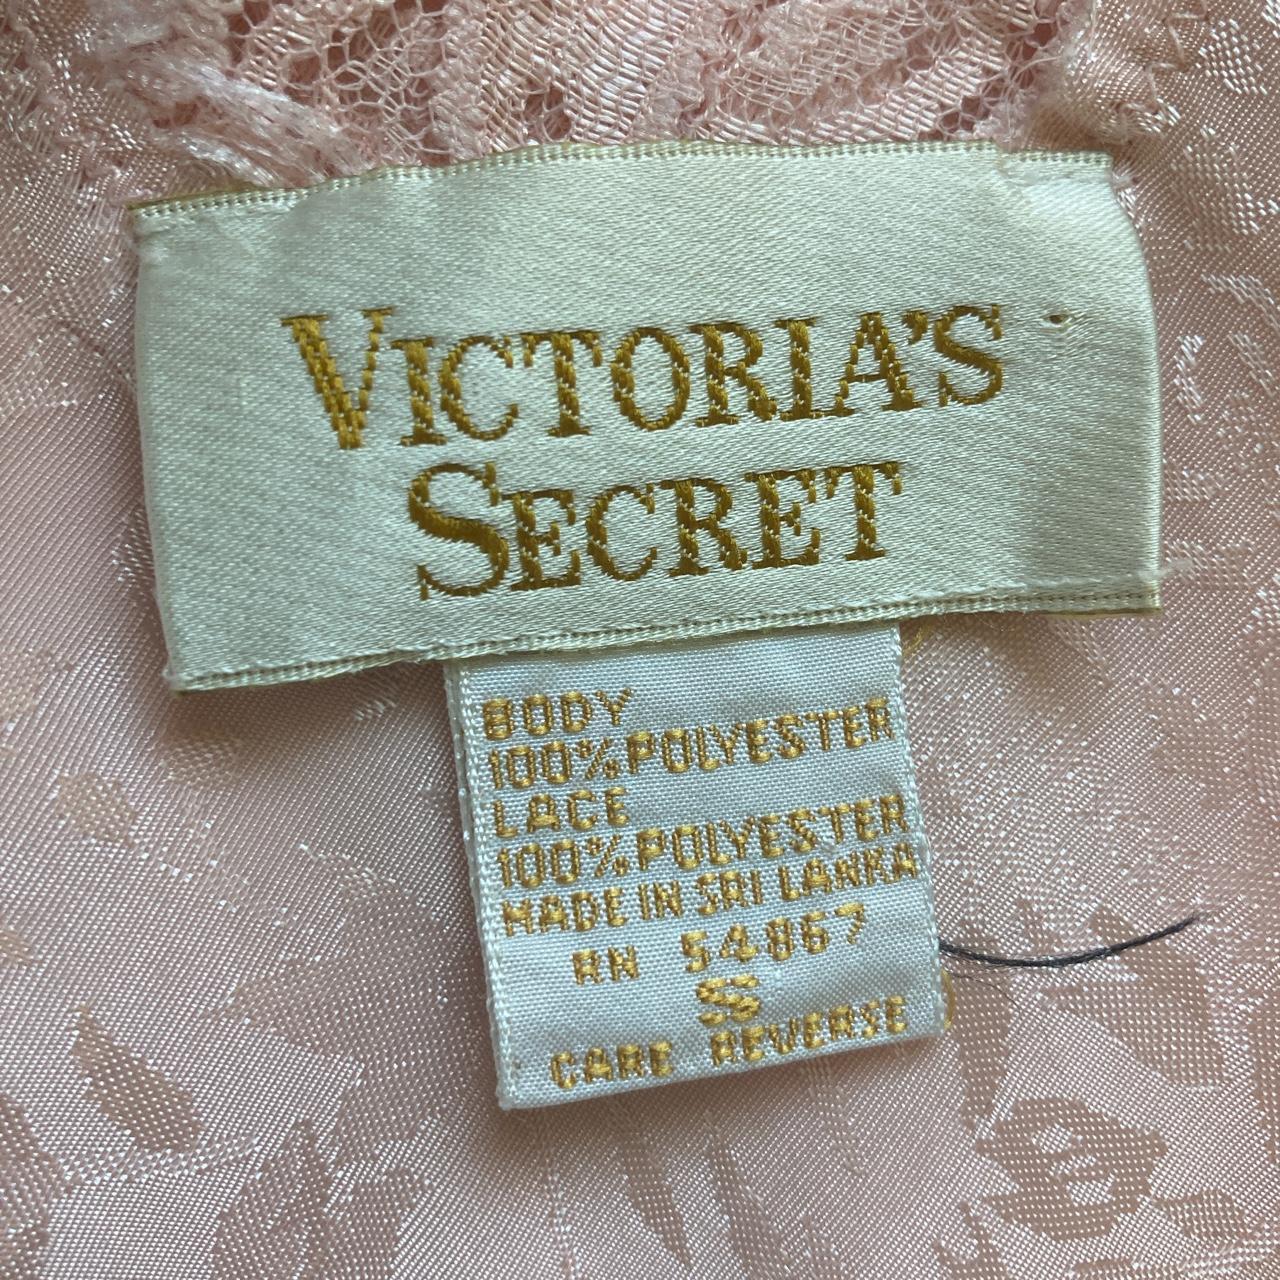 Vintage gold label Victoria secret lace lined slip... - Depop